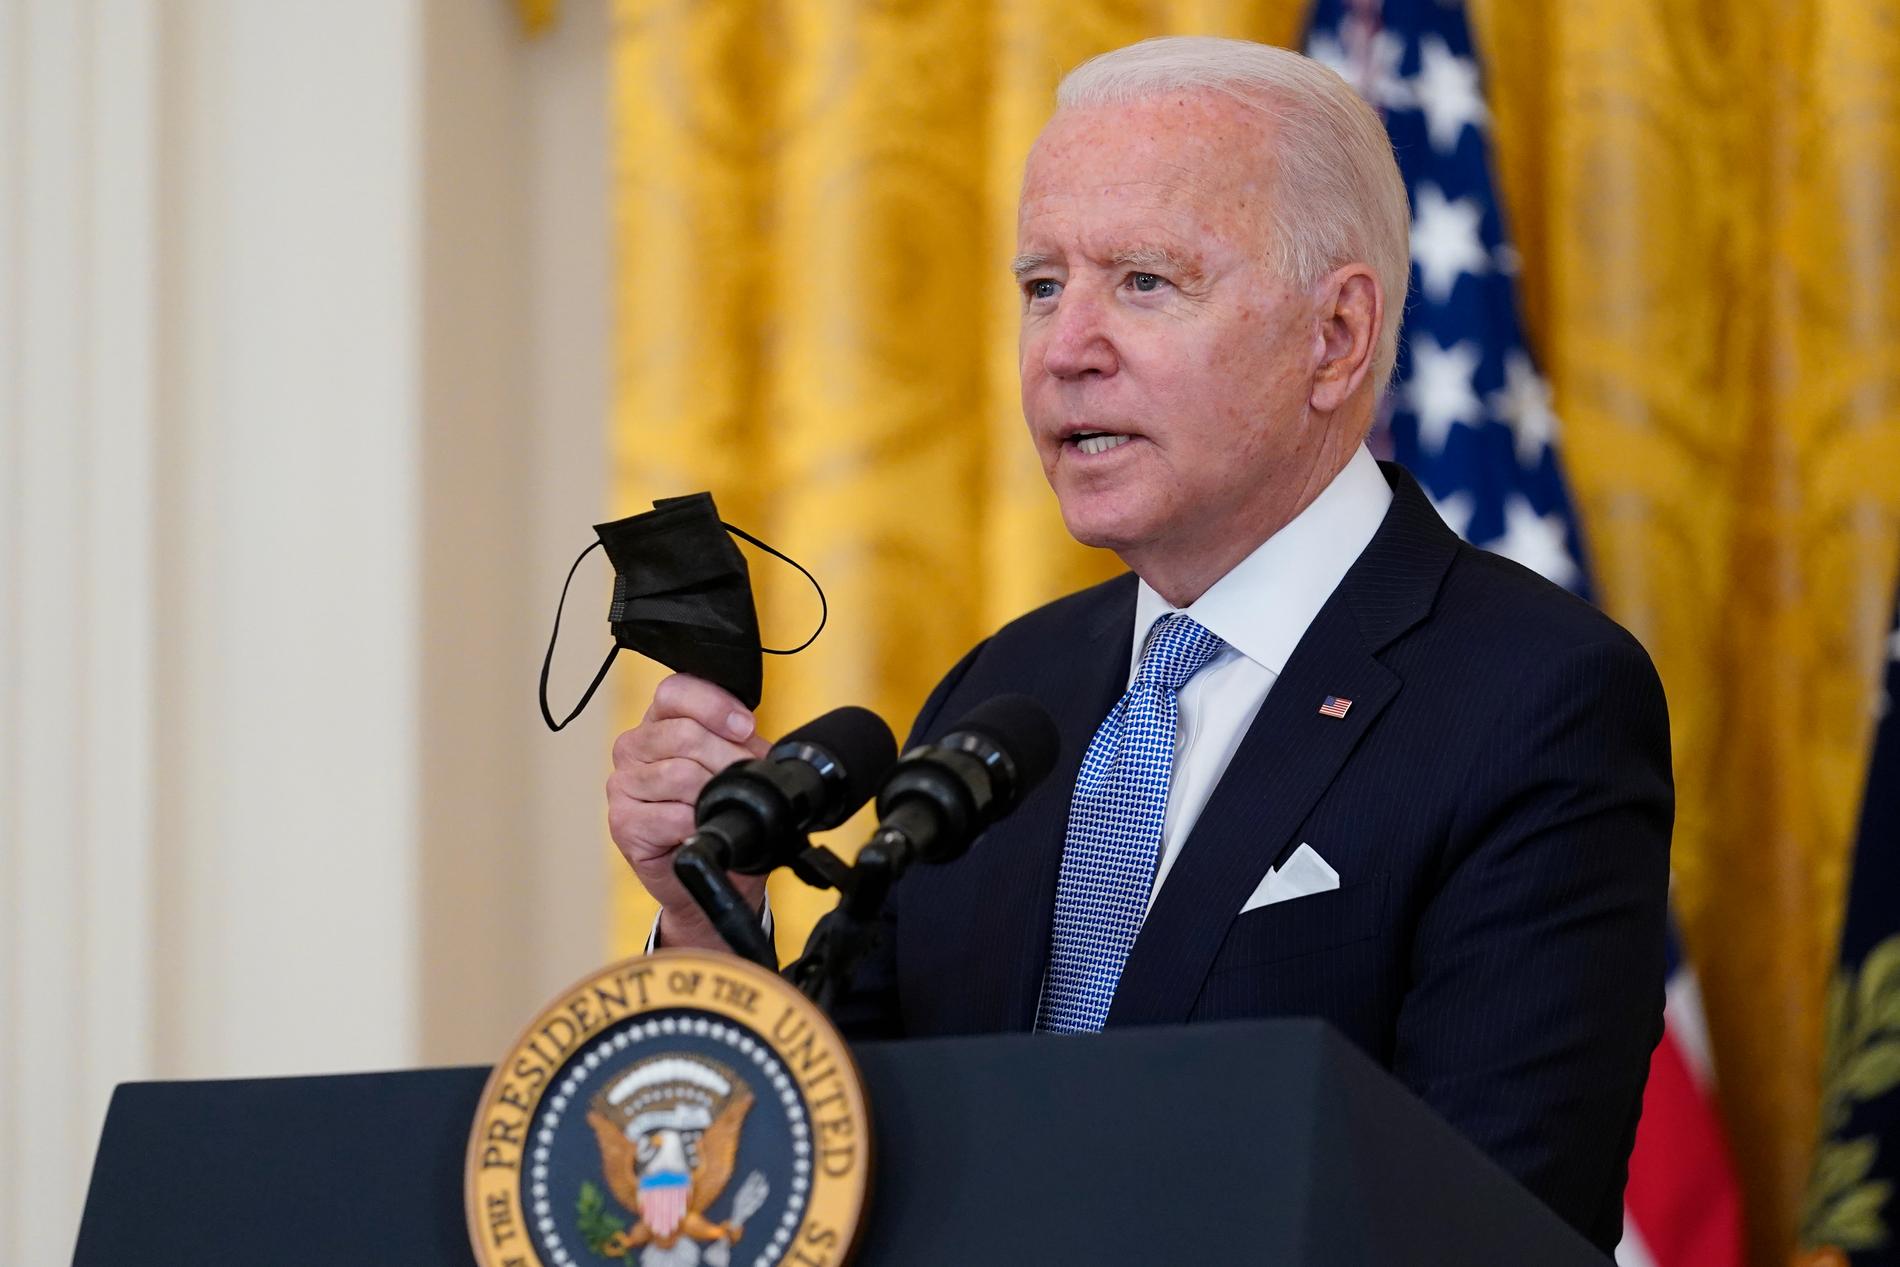 President Joe Biden manar i ett tal alla i USA att vaccinera sig mot covid-19.